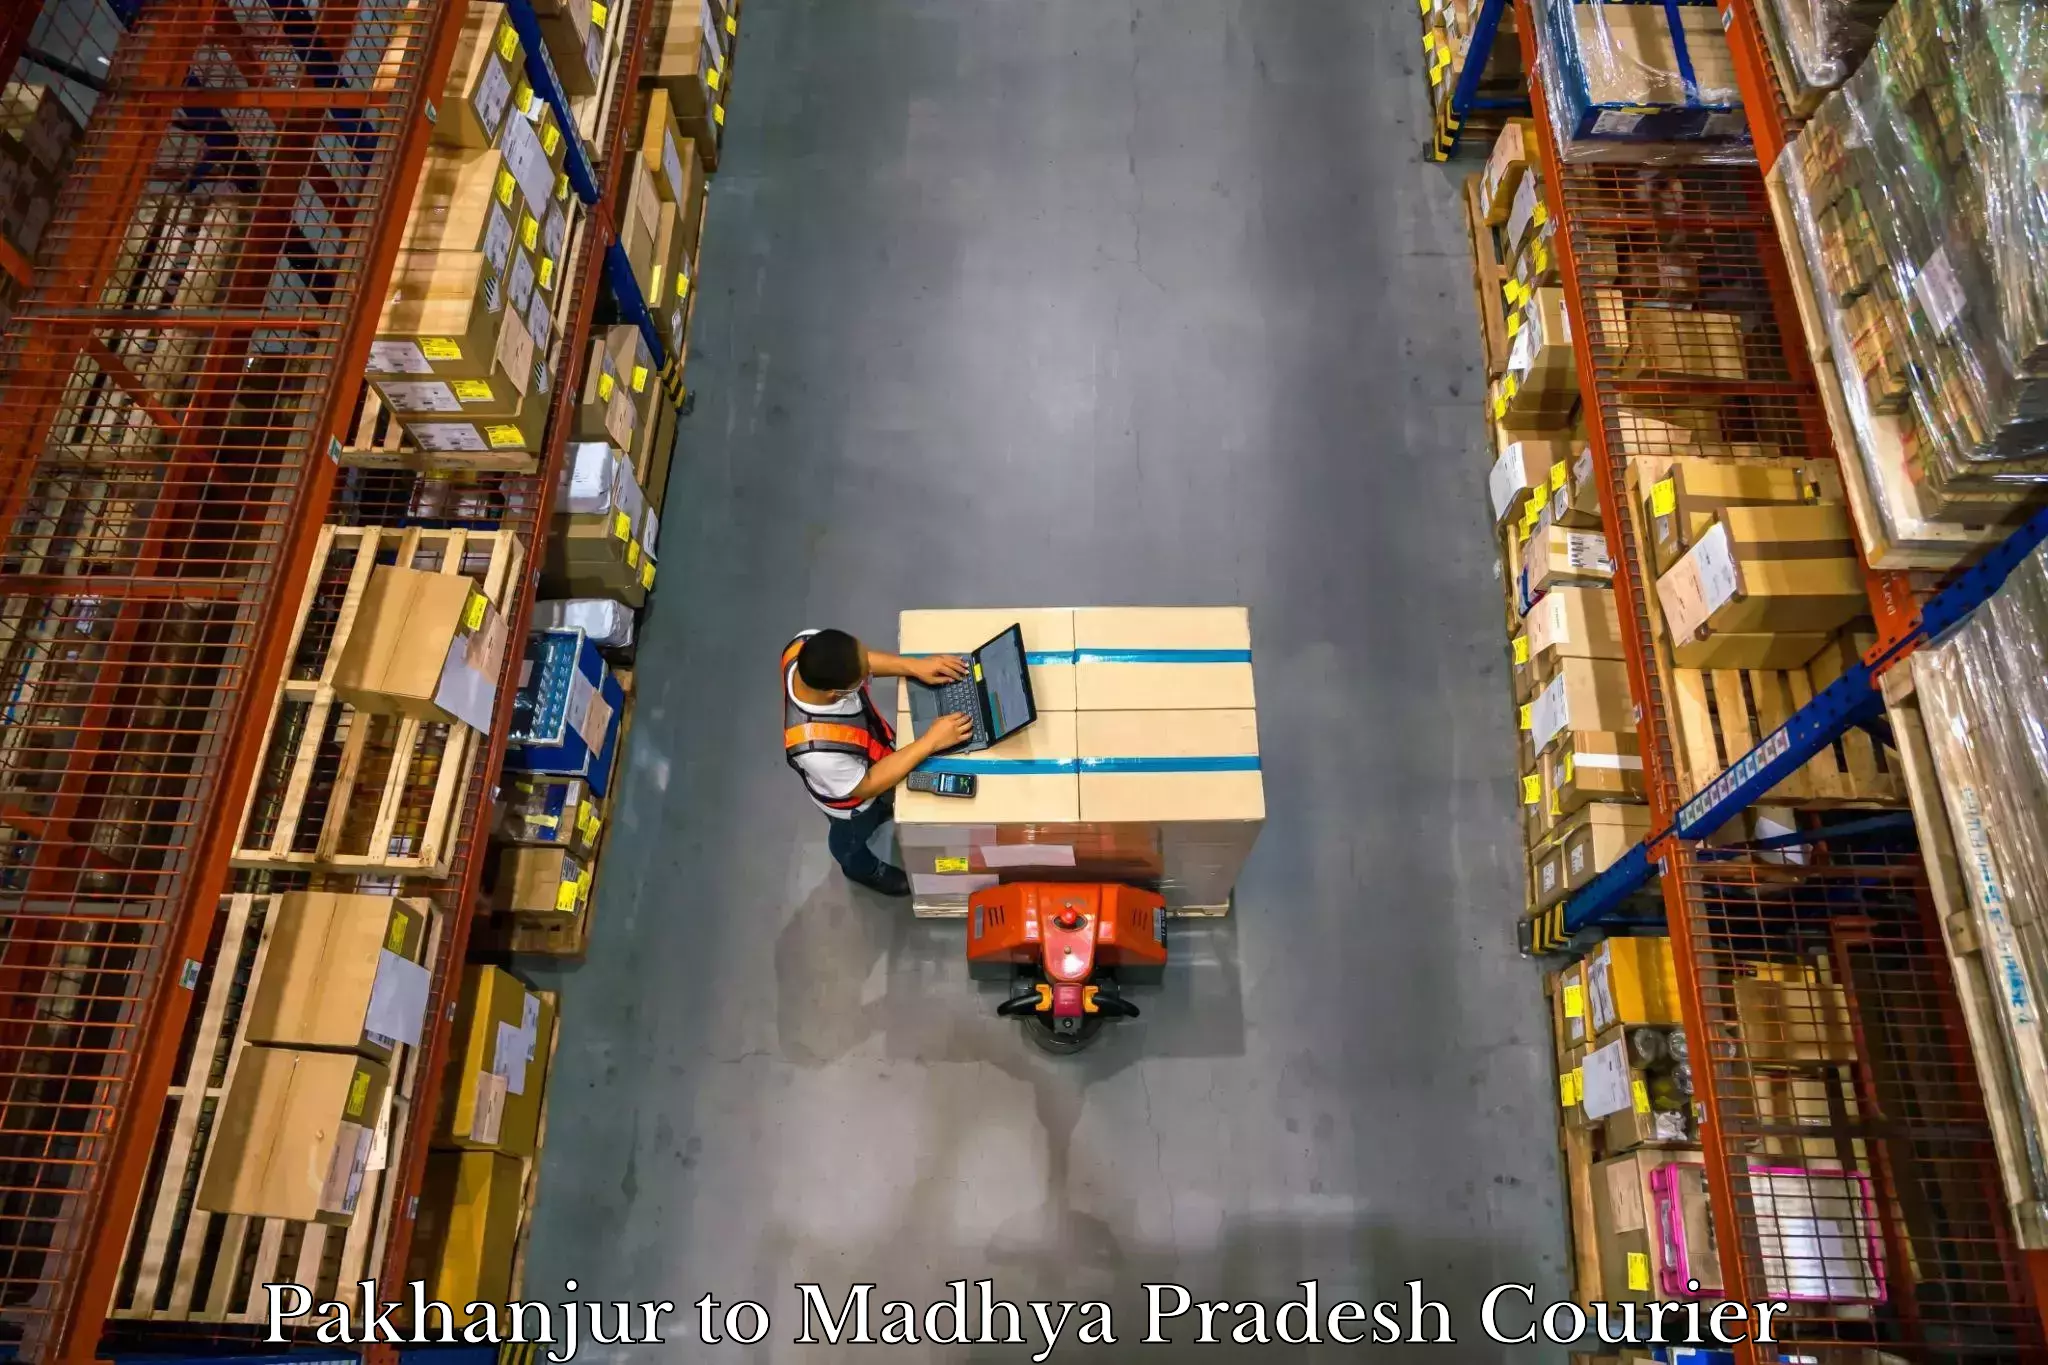 Luggage shipment tracking Pakhanjur to Madhya Pradesh